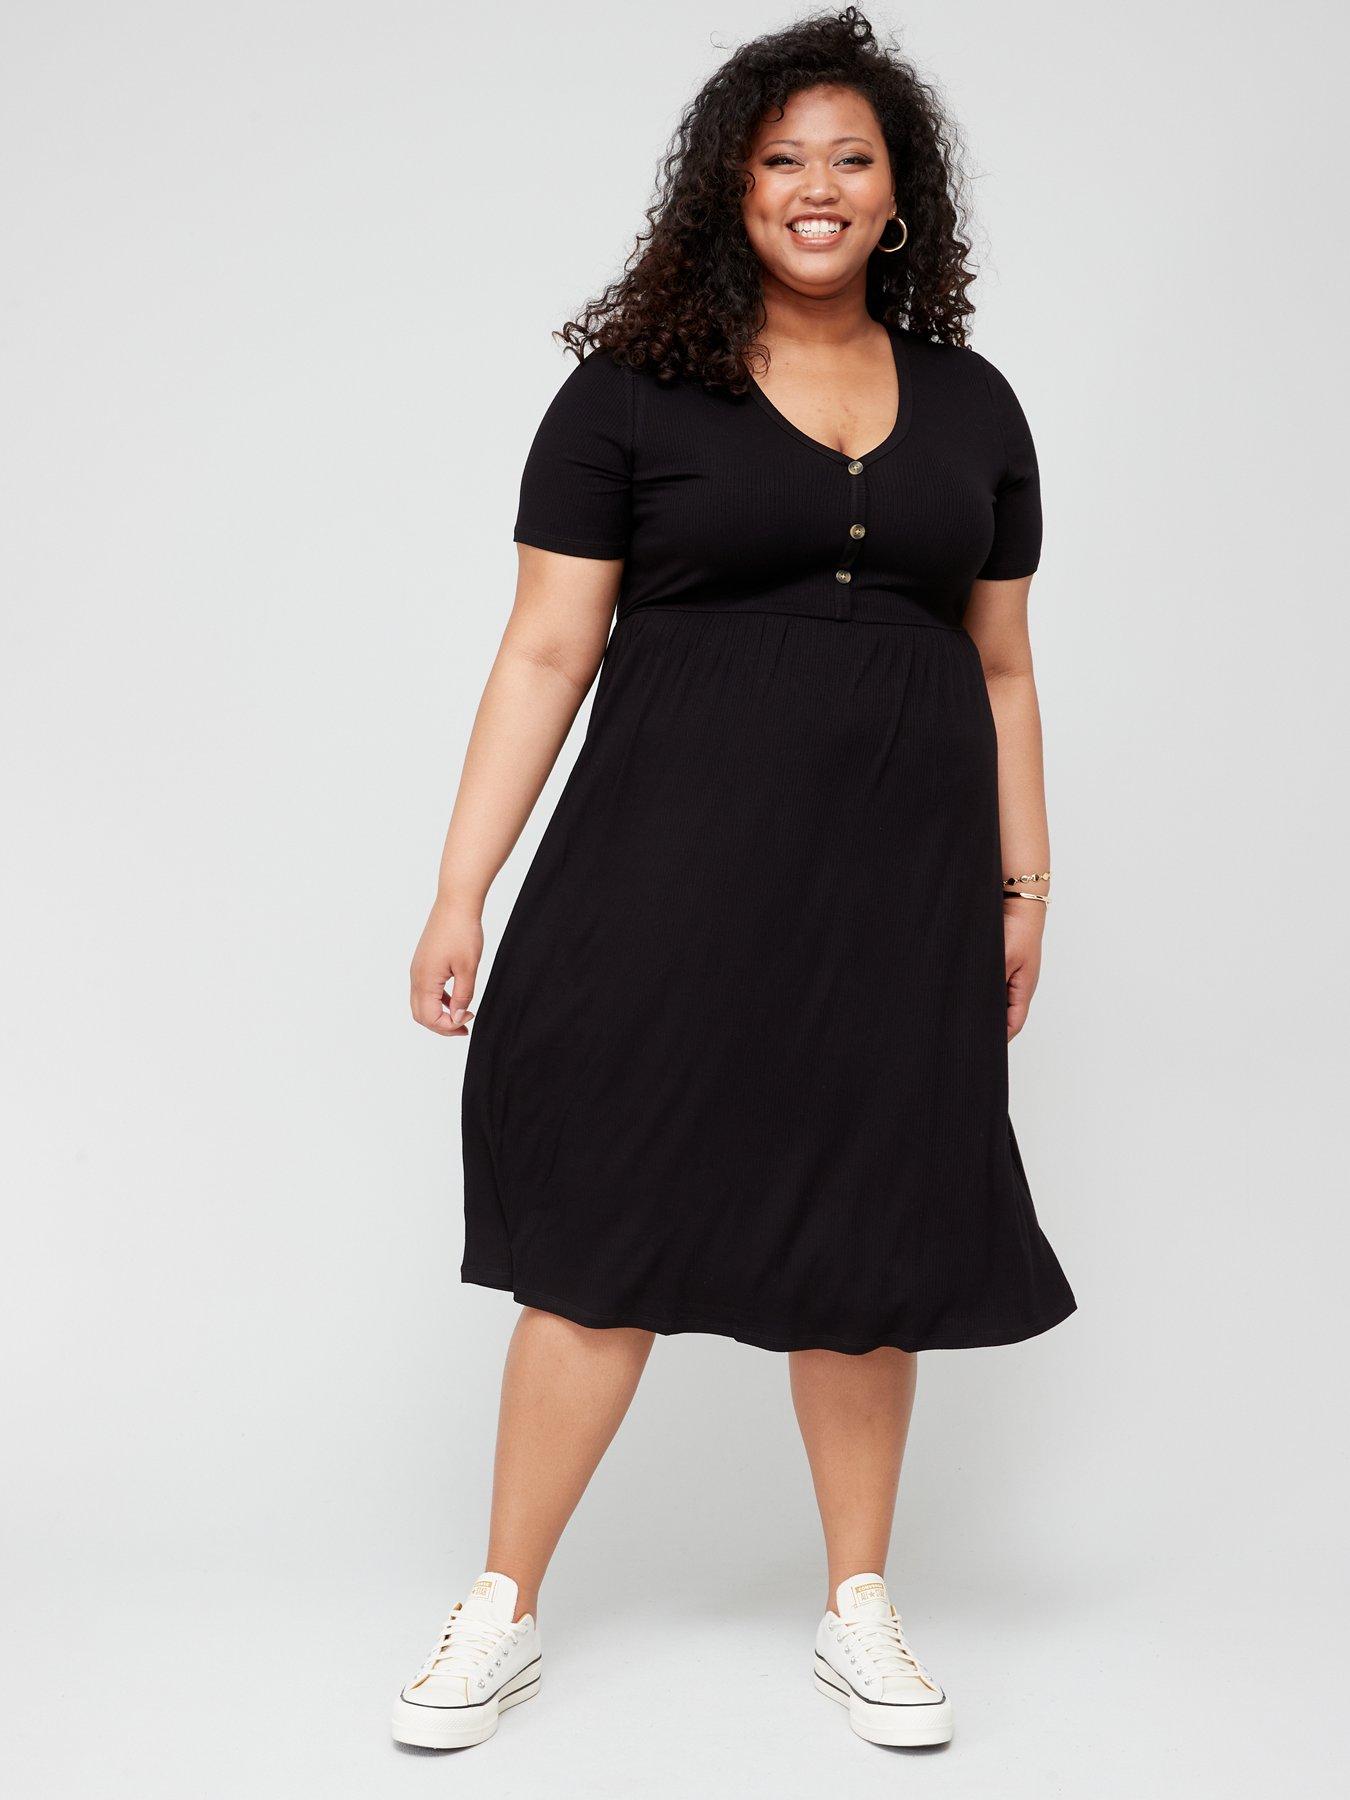 Women's Plus Size Black Dresses | Curve 